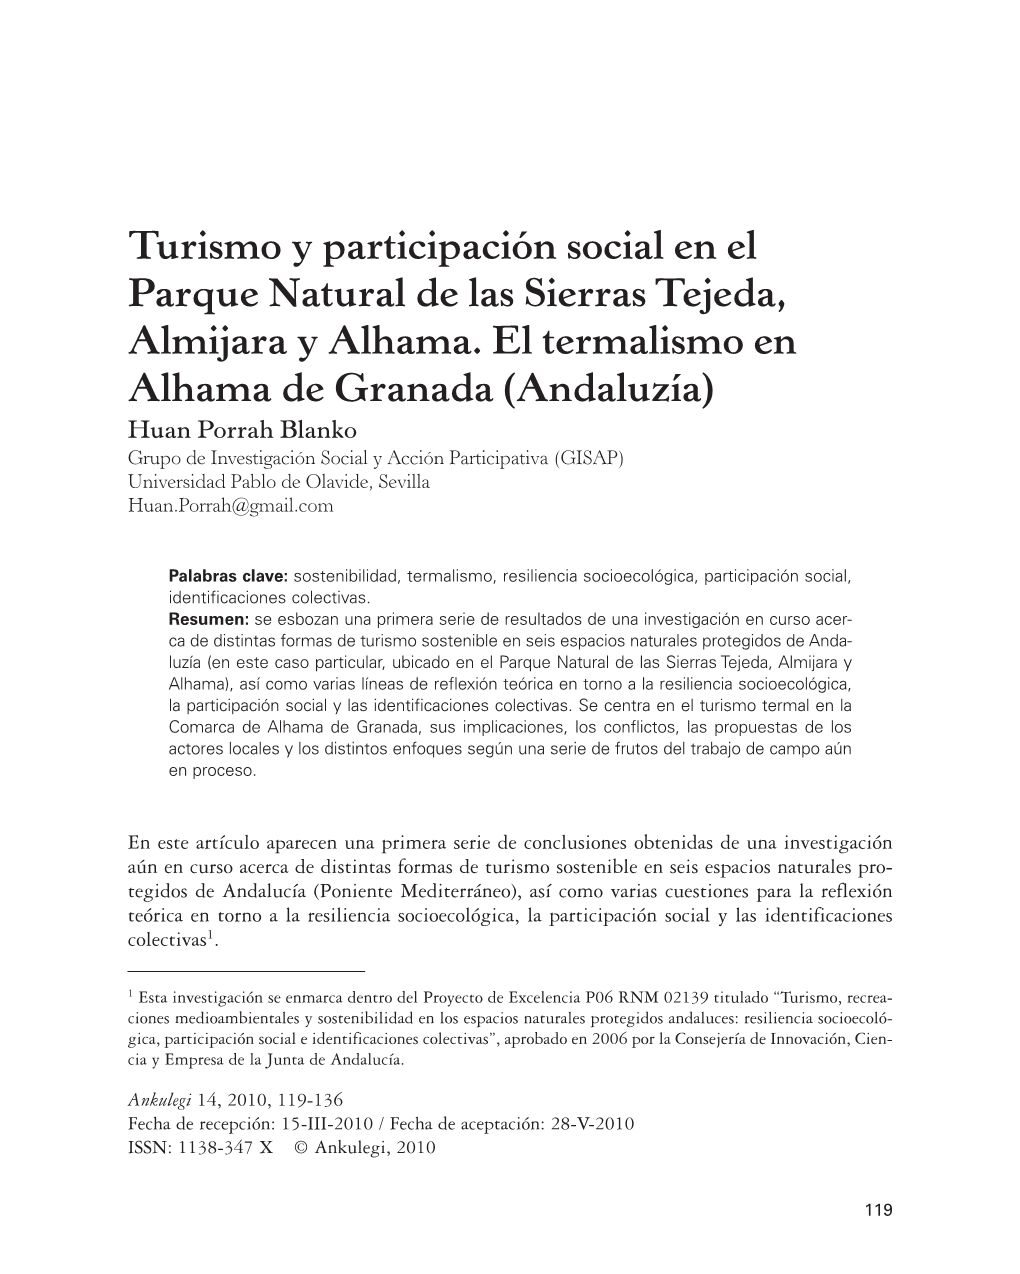 Turismo Y Participación Social En El Parque Natural De Las Sierras Tejeda, Almijara Y Alhama